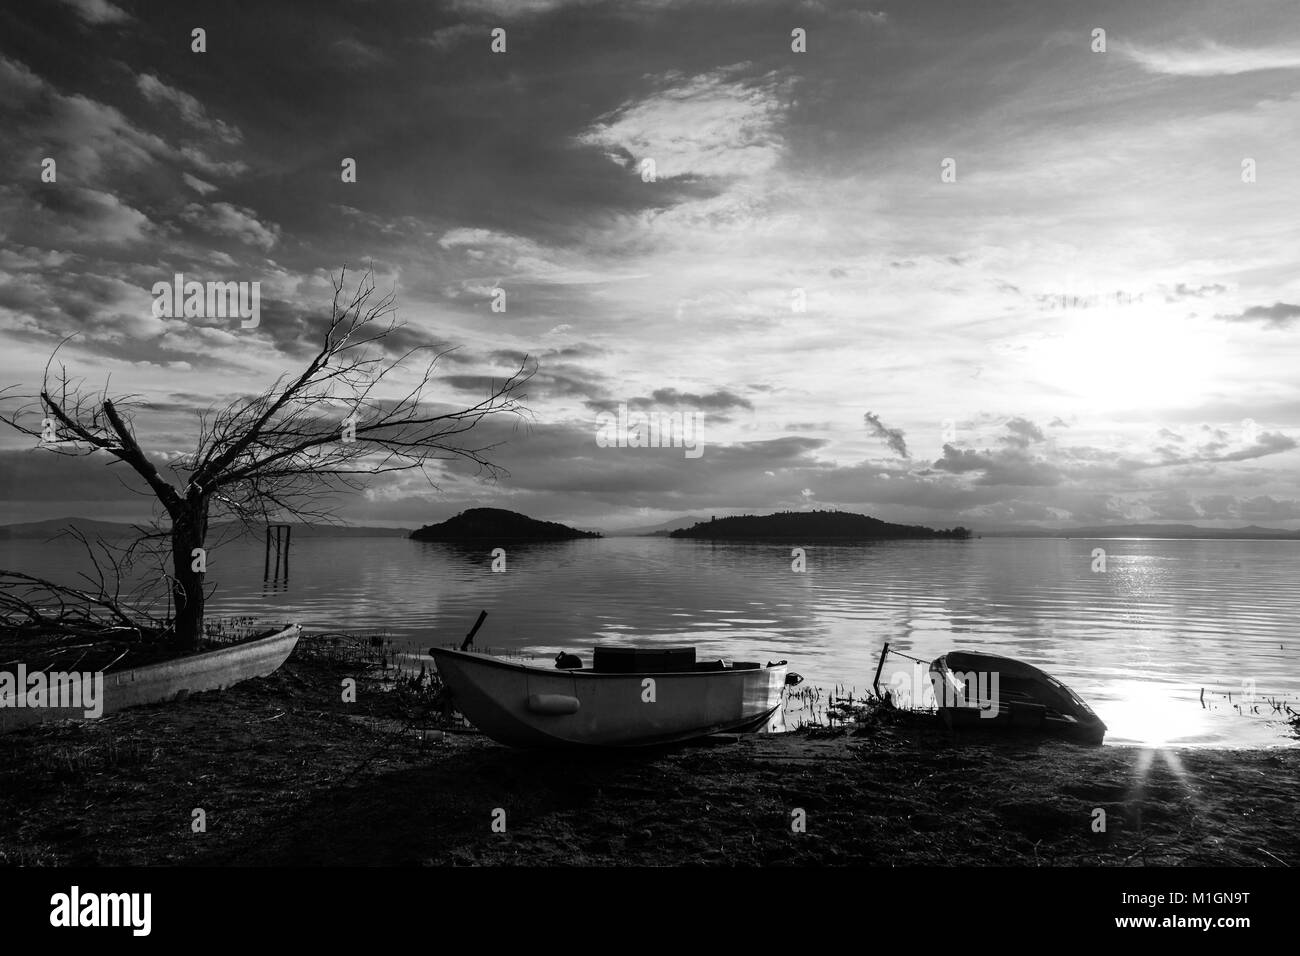 Vue sur un lac au coucher du soleil, presque avec quelques bateaux, d'un vide Banque D'Images